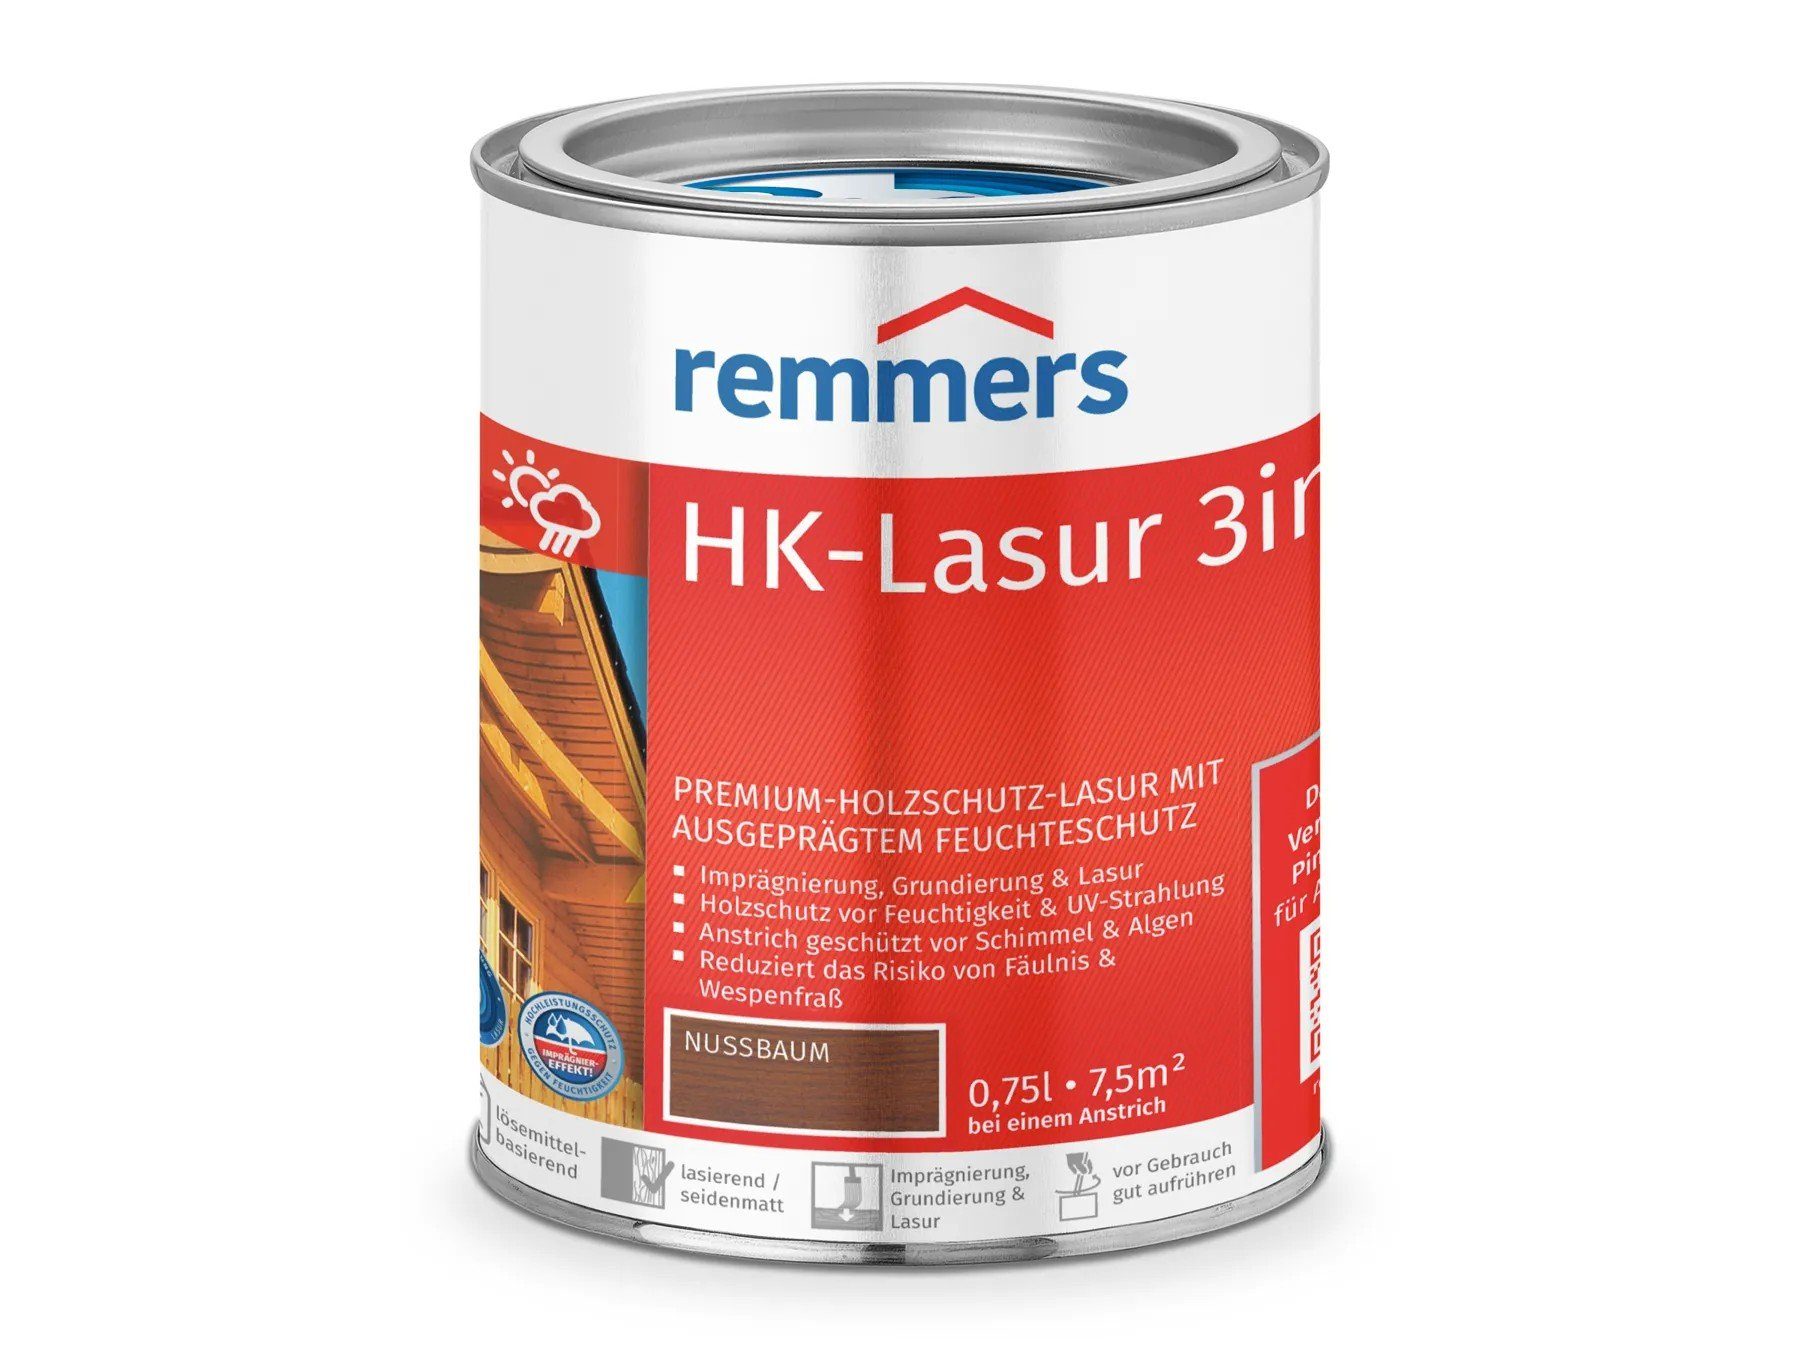 (RC-660) HK-Lasur nussbaum 3in1 Remmers Holzschutzlasur